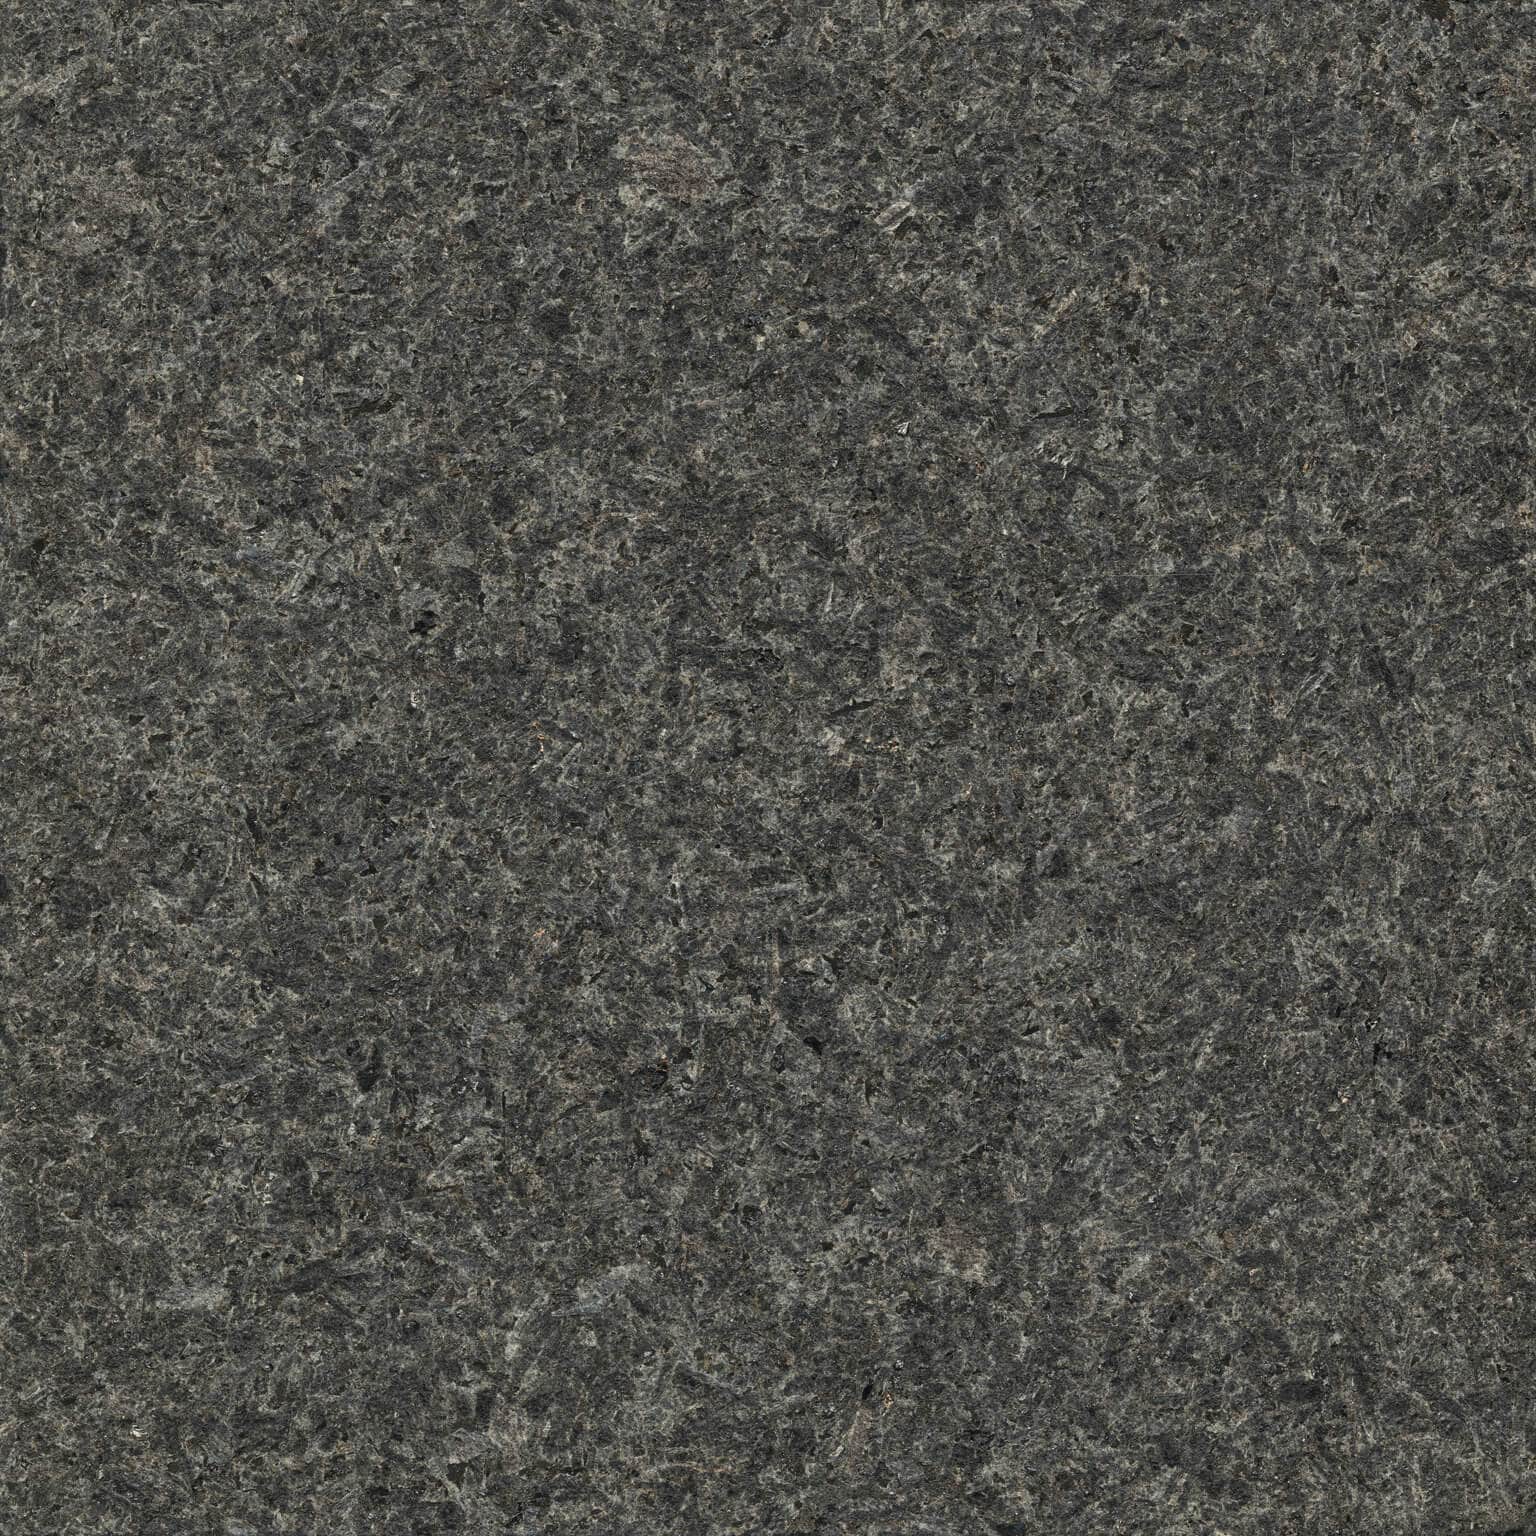 Cambrian Black Granite Polycor, Cambrian Black Leathered Granite